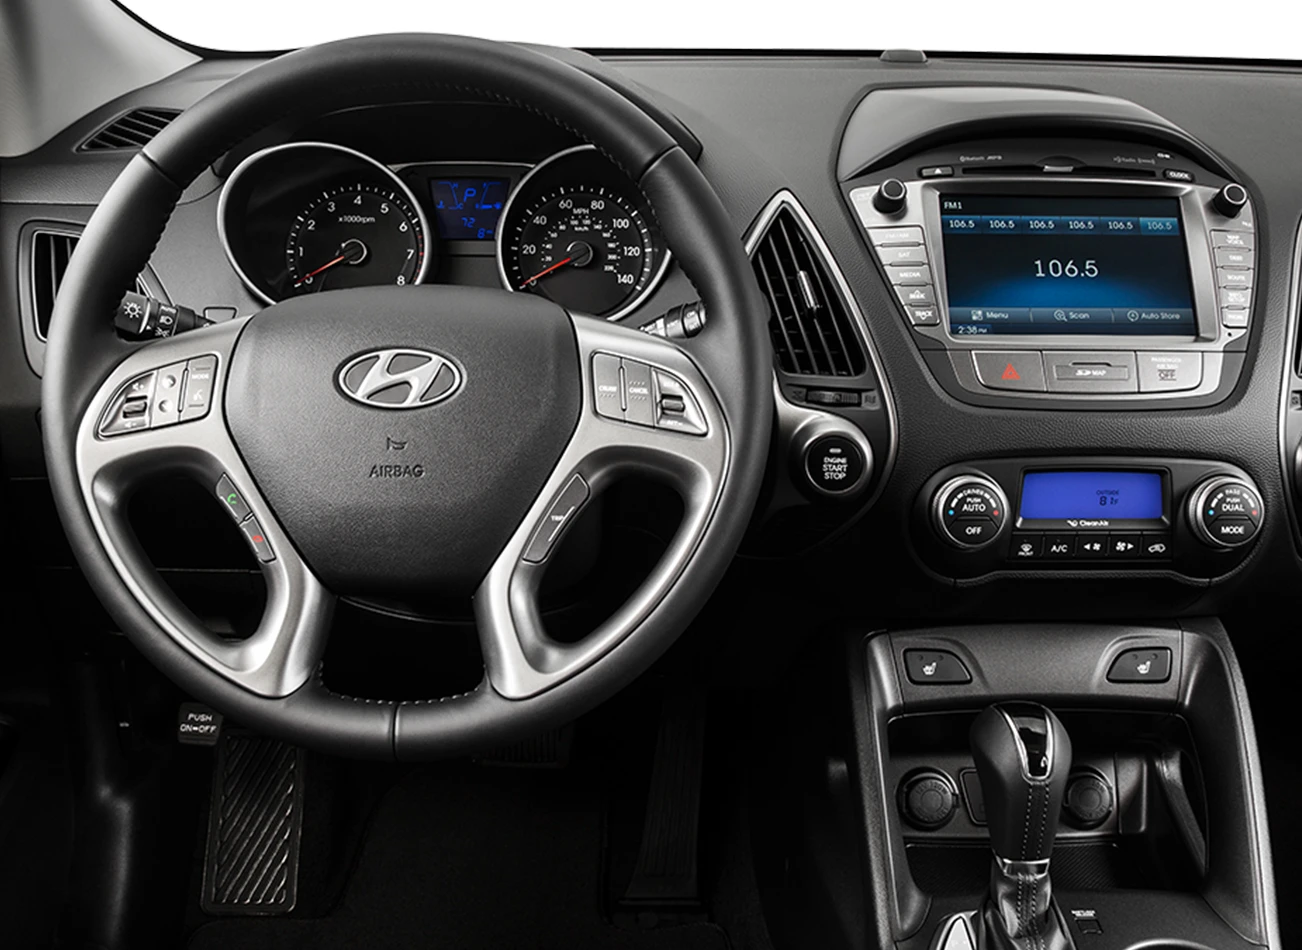 2015 Hyundai Tucson: Reviews, Photos, and More: Reasons to Buy #3 | CarMax